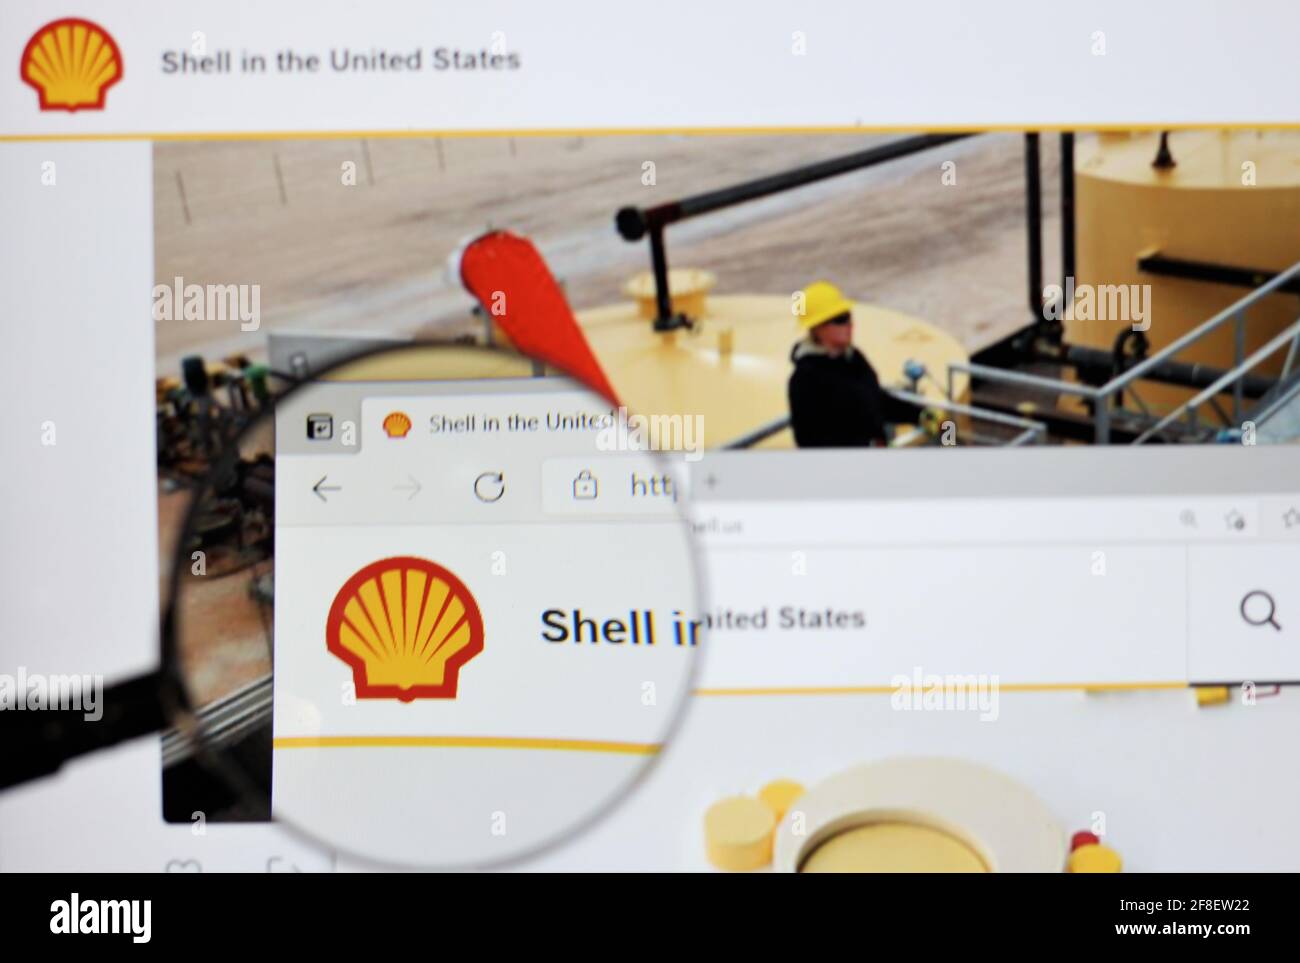 Royal Dutch Shell plc, allgemein bekannt als Shell, ist ein anglo-niederländisches multinationales Öl- und Gasunternehmen mit Sitz in Den Haag, Niederlande. Shell-Logo Stockfoto